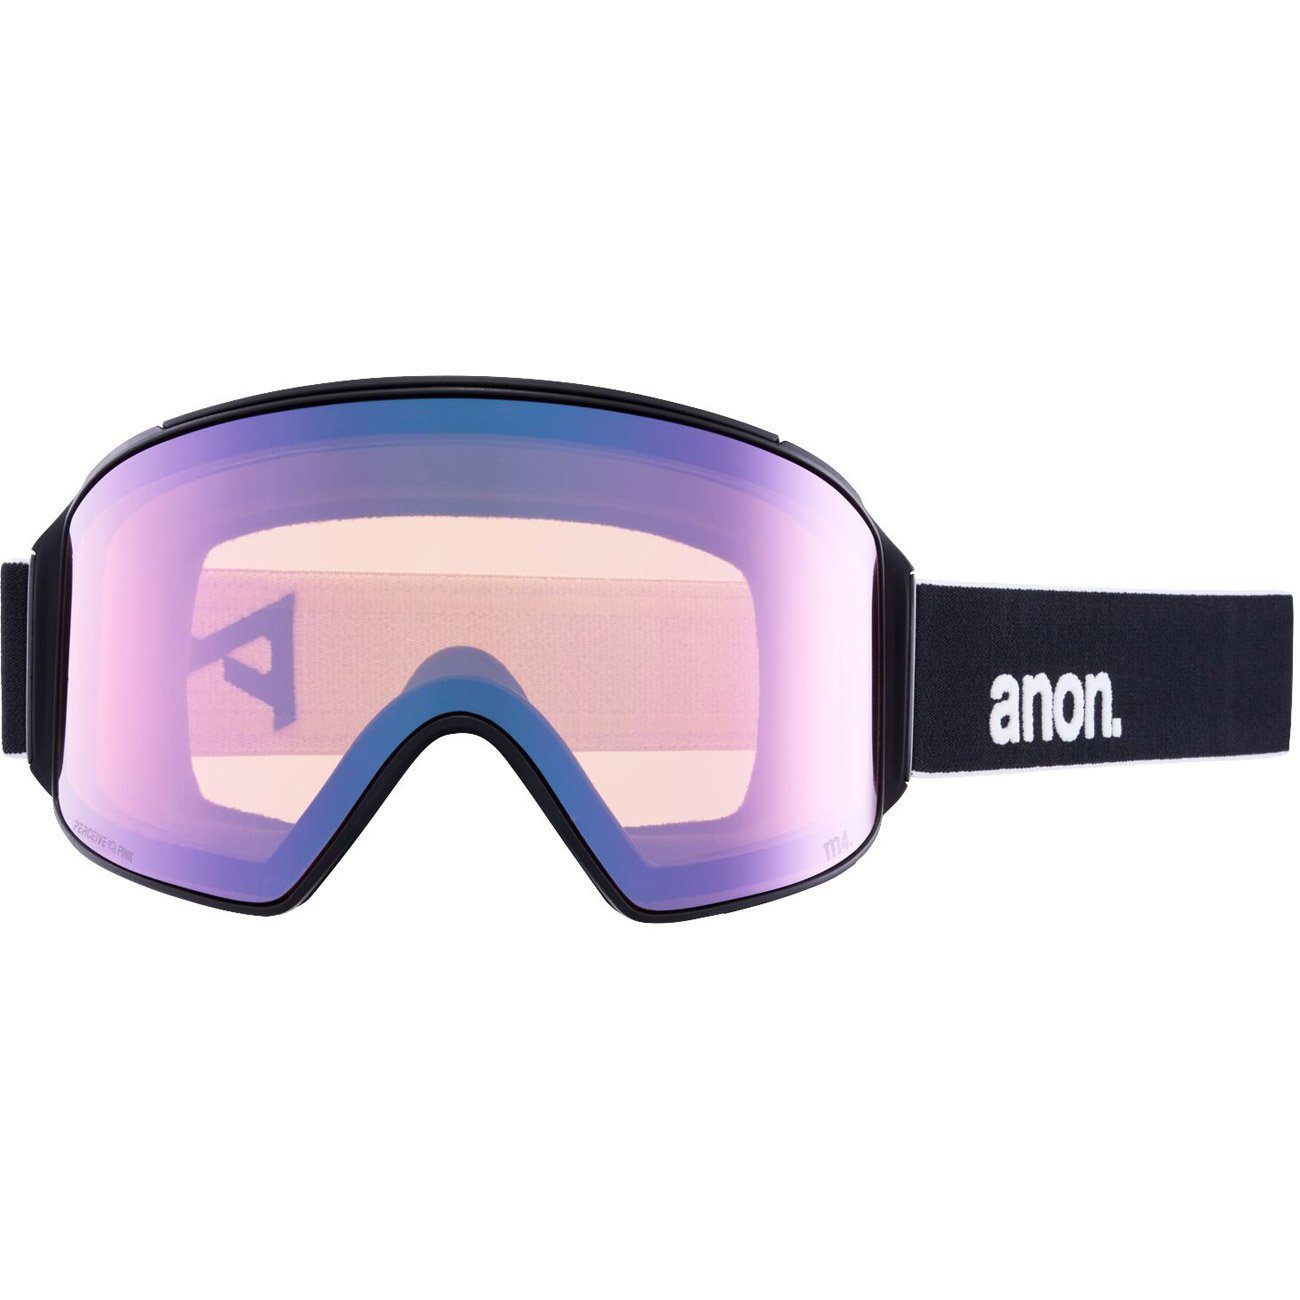 vrbl Snowboardbrille, CYLINDRICAL black/prcv blue M4 Anon